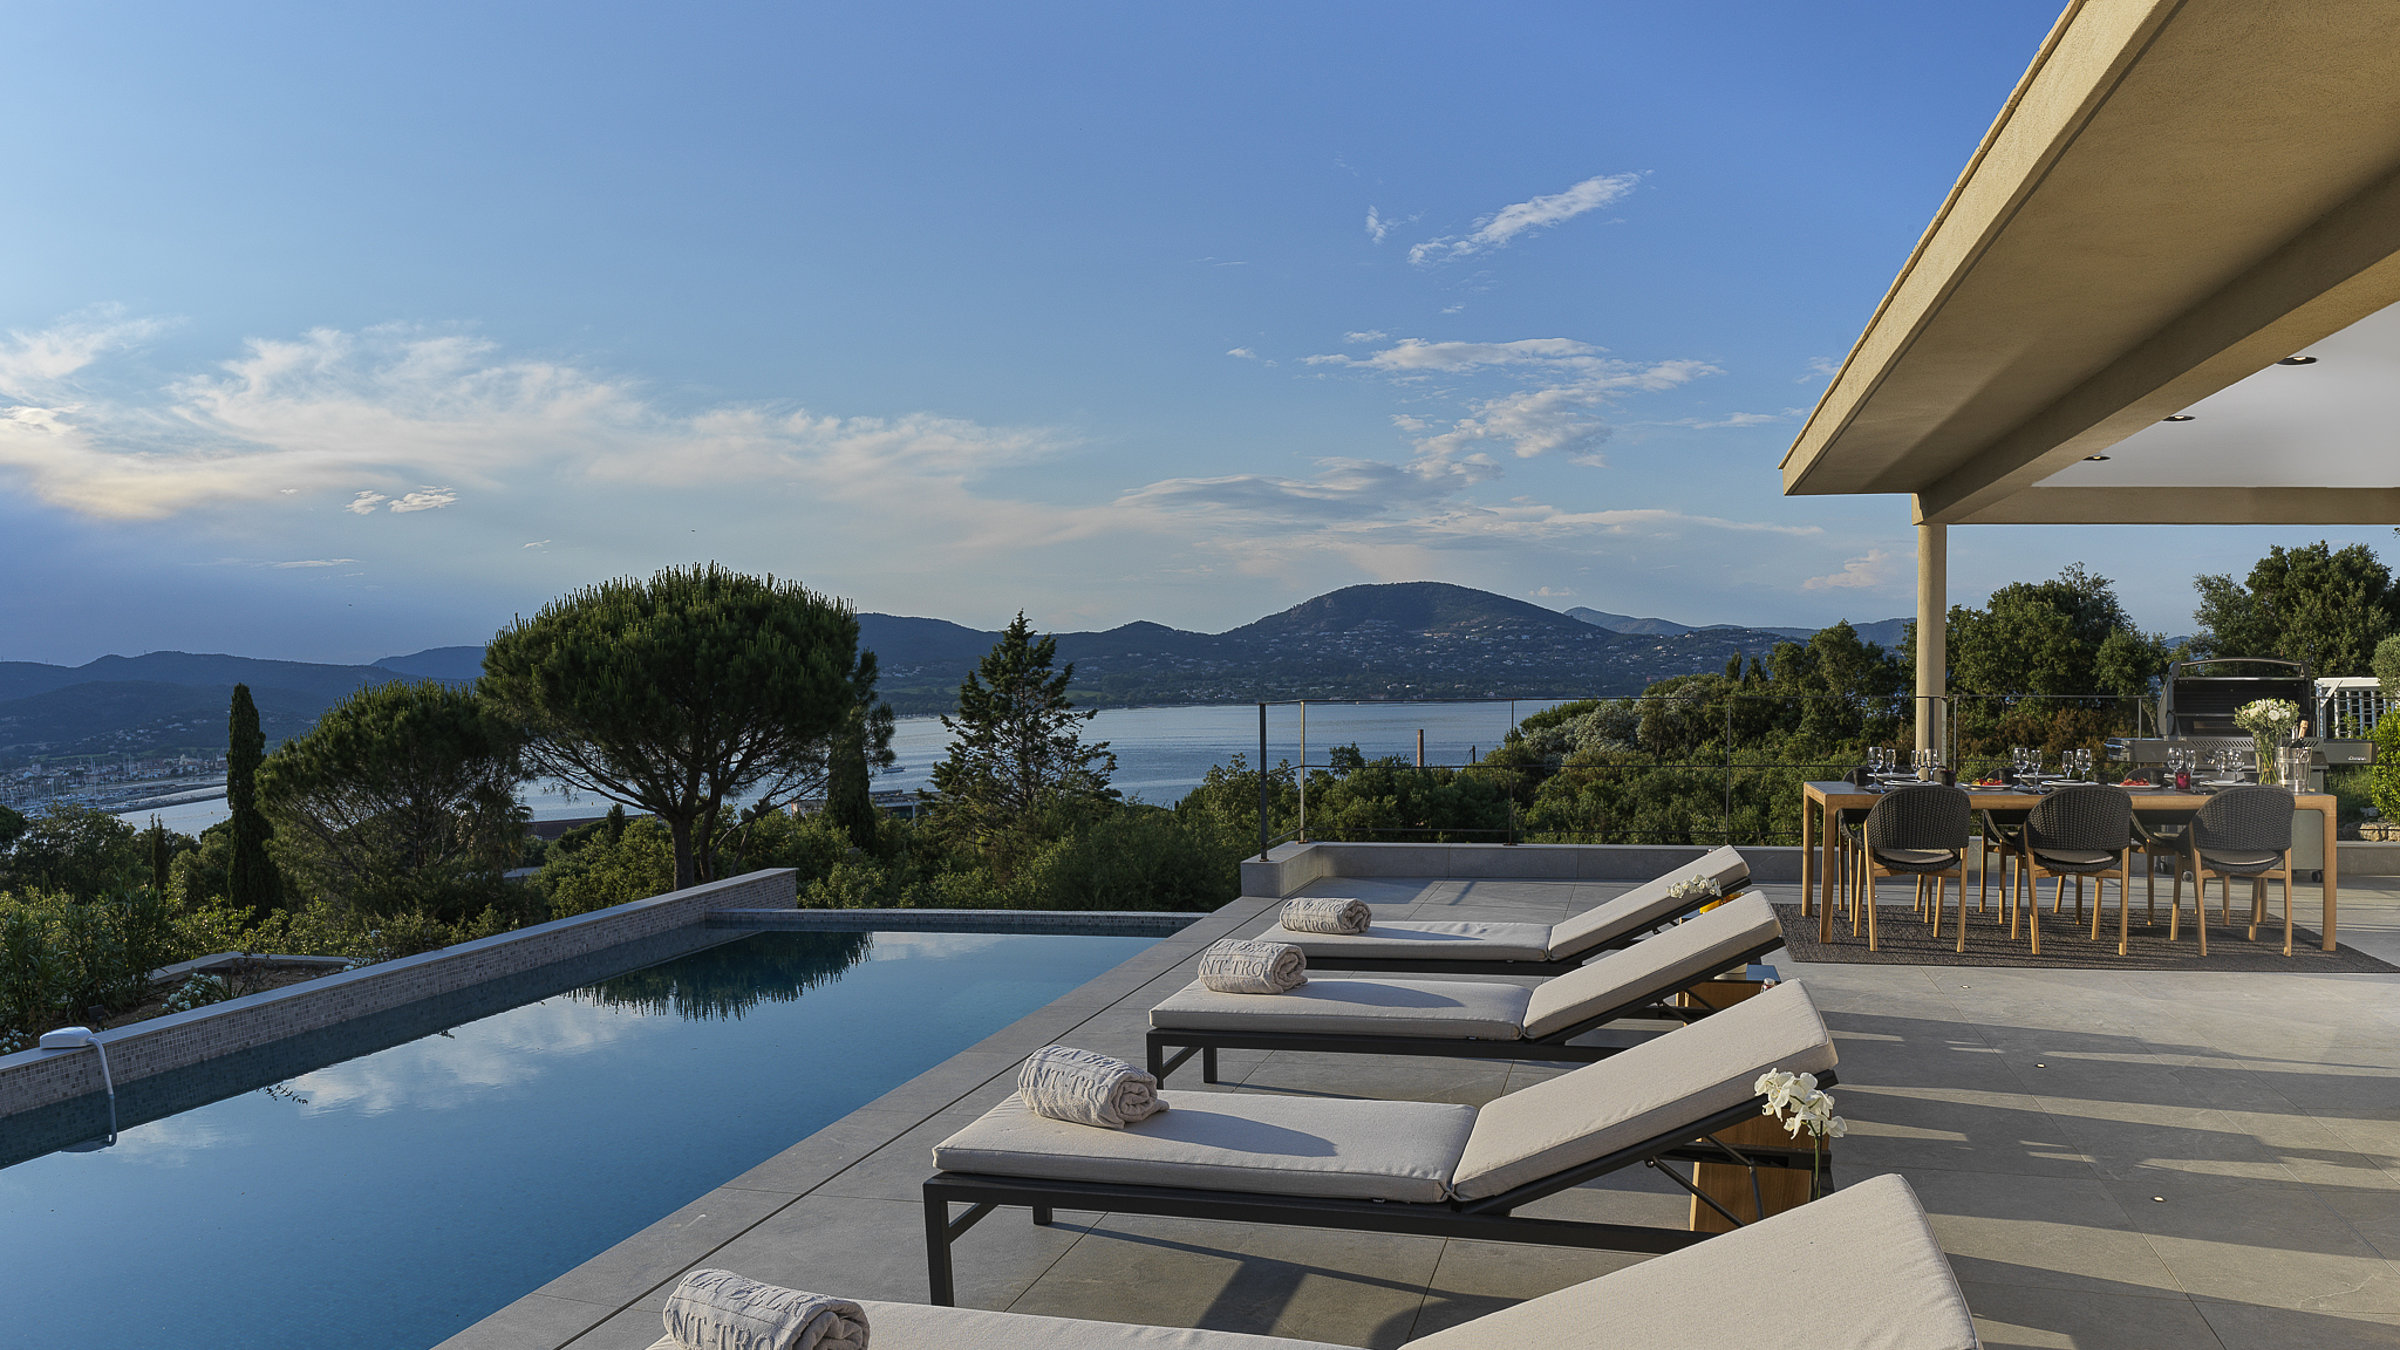 Althoff Villa Belrose in St. Tropez Côte d'Or Aussenbereich Terrasse mit Liegen und Infinity Pool im Sommer